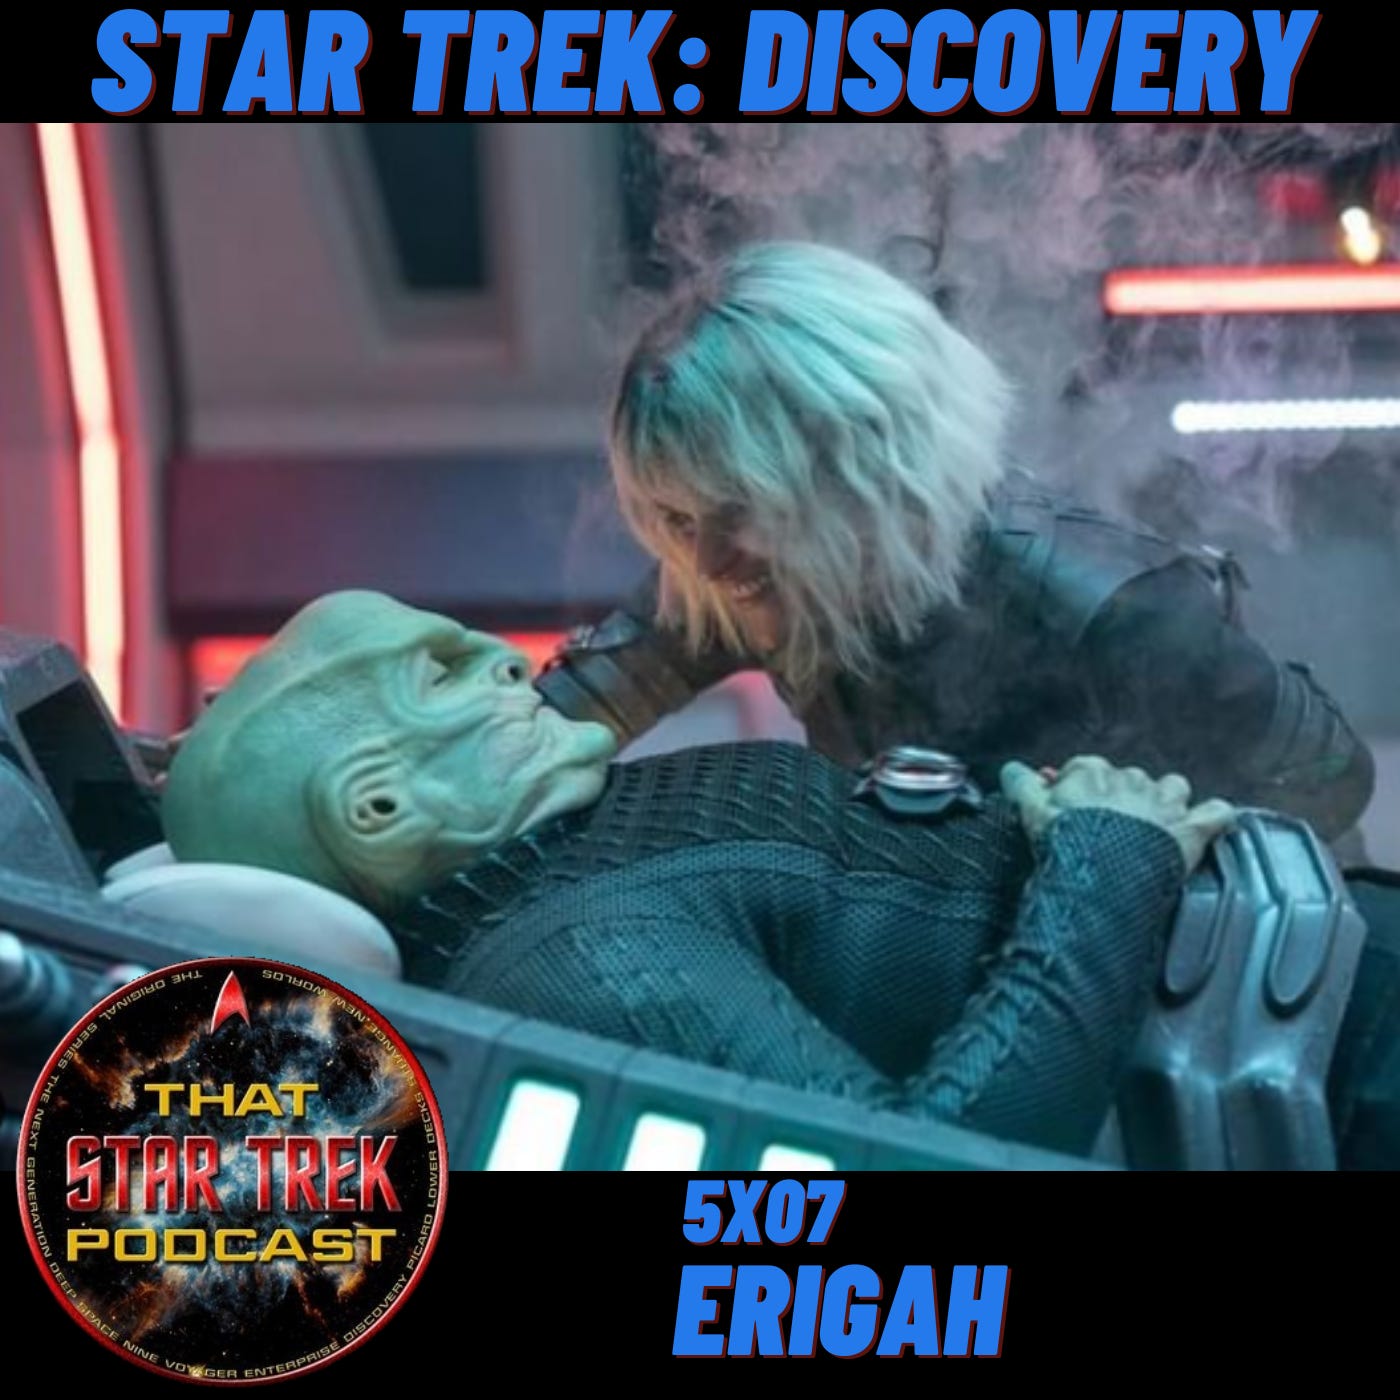 Star Trek Discovery 5x07: Erigah